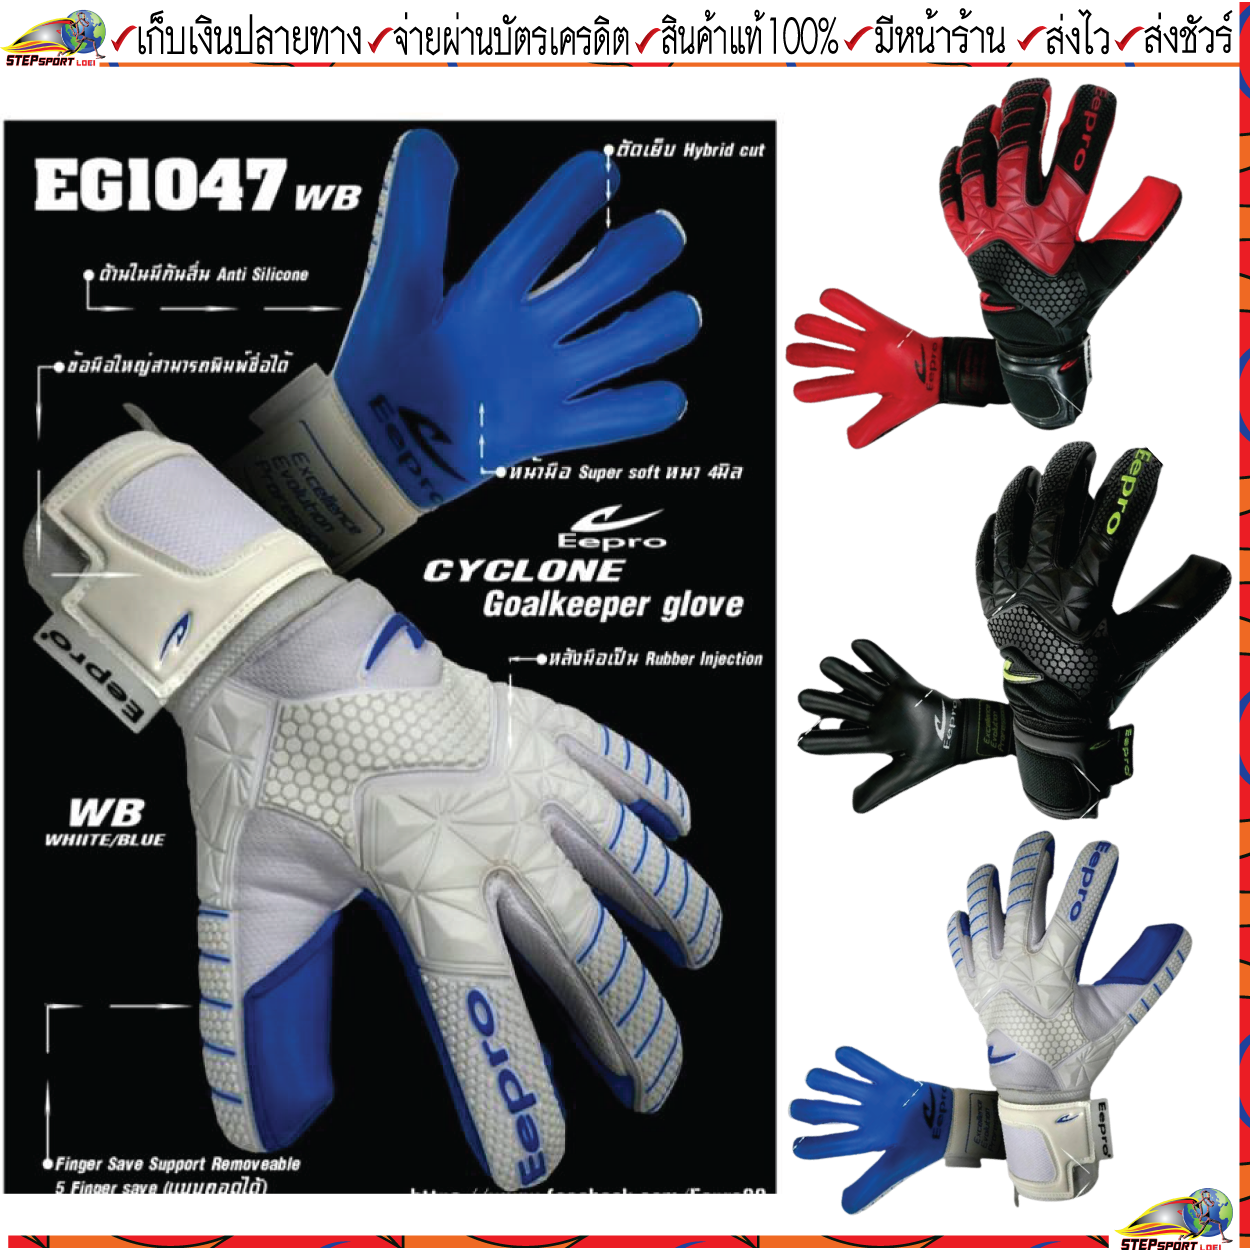 Eepro(อีโปร)ถุงมือผู้รักษาประตู รหัสสินค้า EG1047 CYCLONE GOALKEEPER GLOVE สี ดำ/แดง ดำ/เขียว ขาว/น้ำเงิน Size 7-11